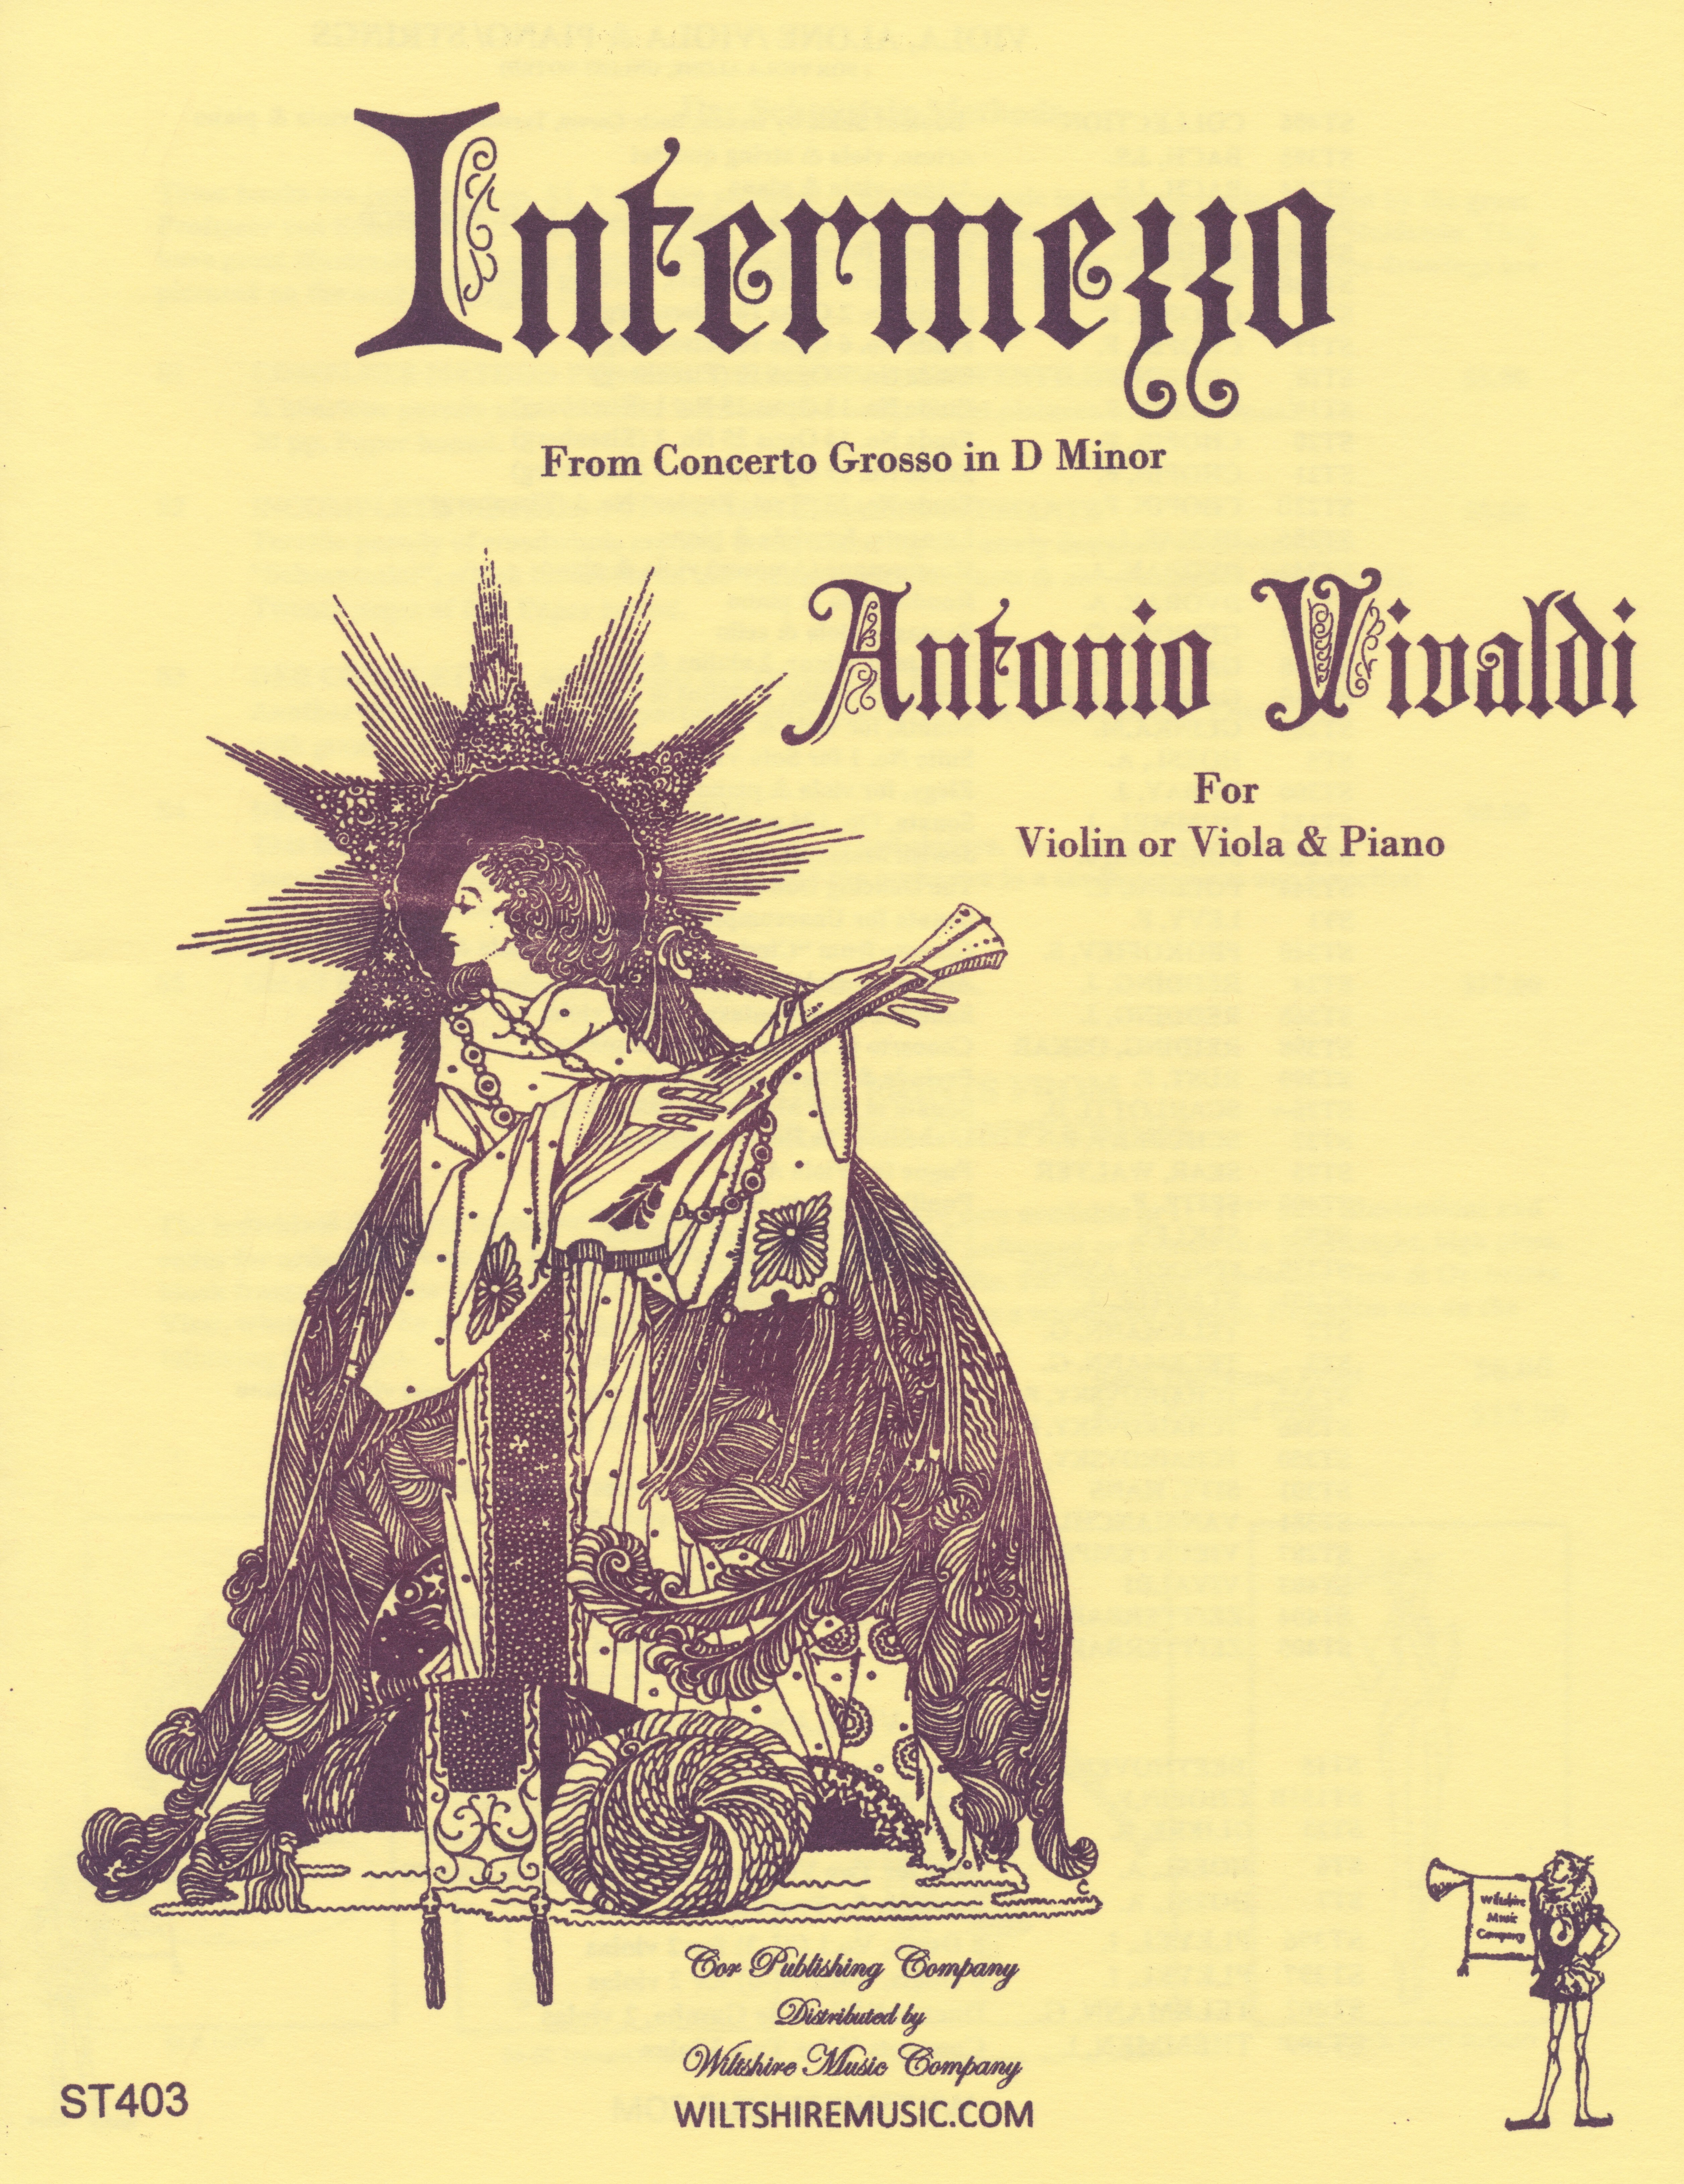 Intermezzo, a. Vivaldi violin/viola & piano